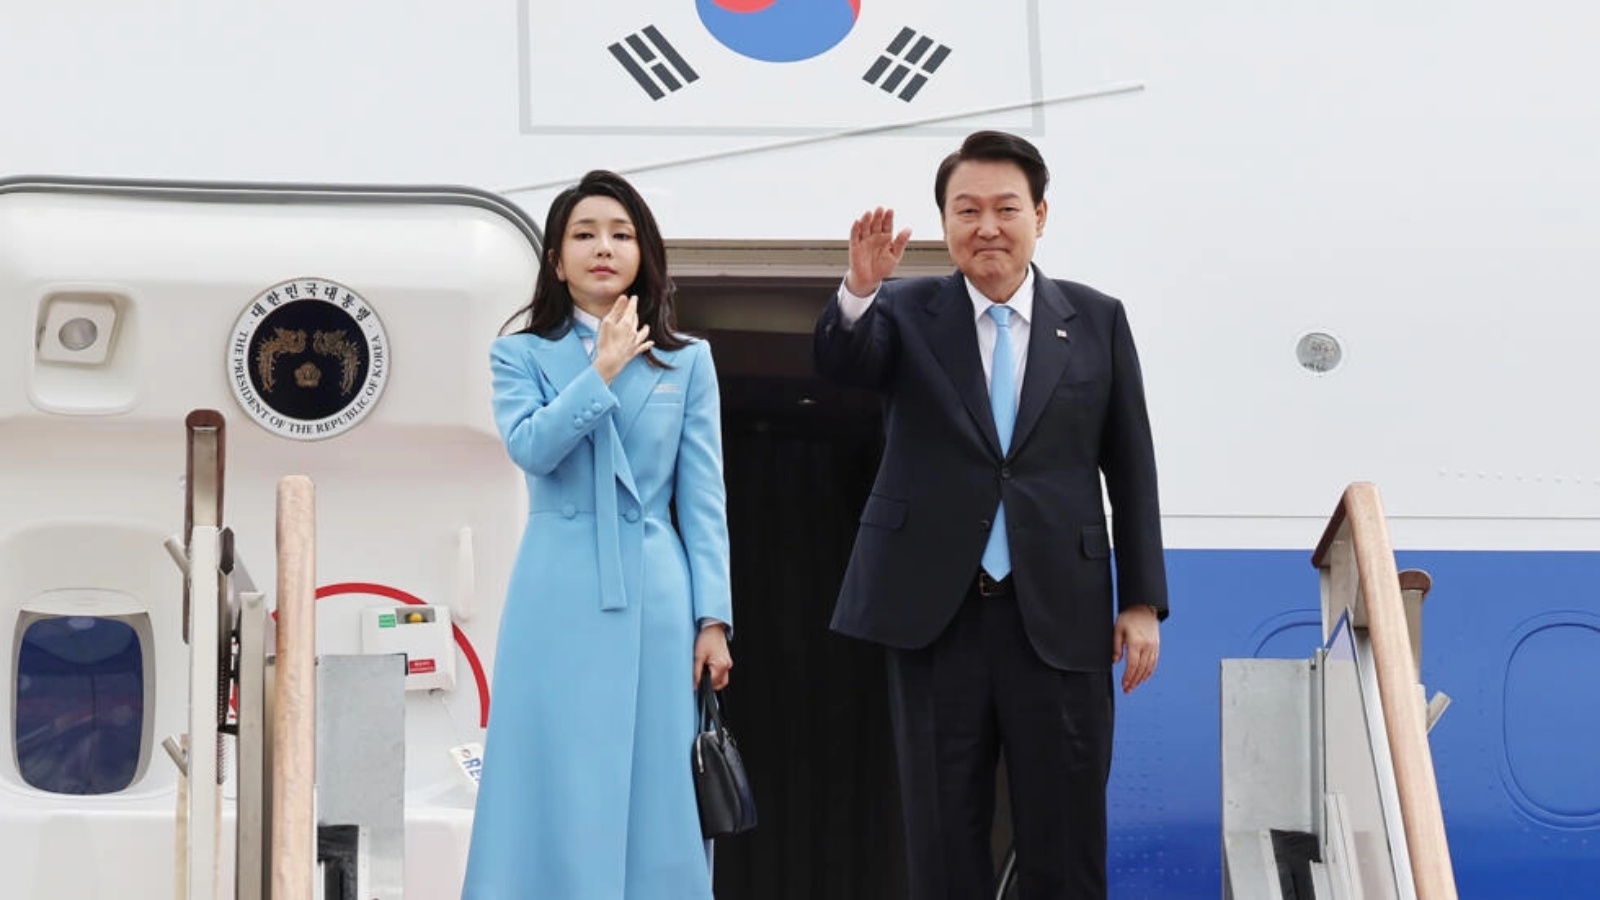 رئيس كوريا الجنوبية يون سوك يول وزوجته كيم كيون هي في واشنطن في زيارة دولة تستغرق ستة أيام